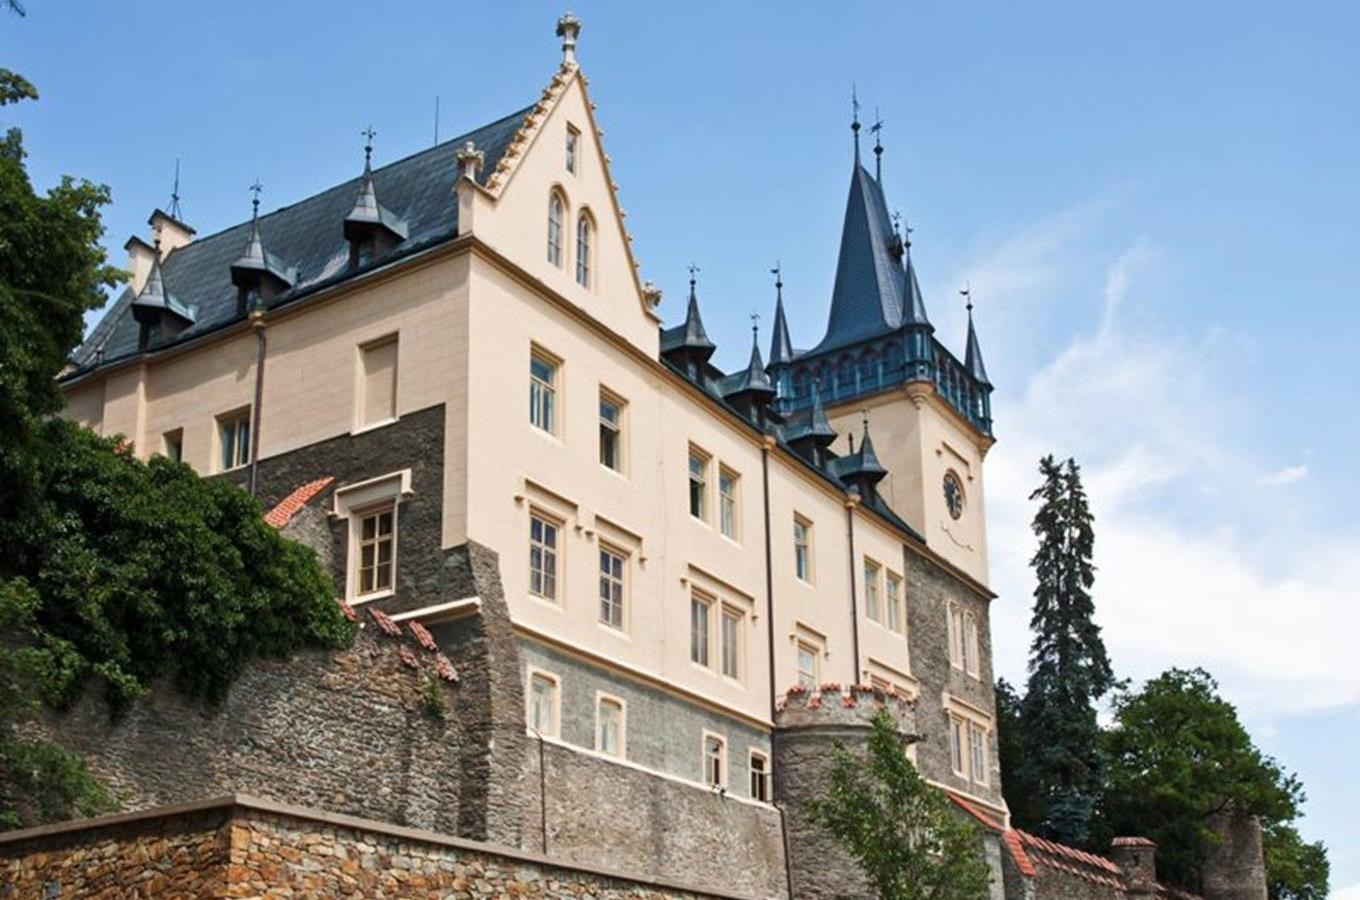 Zámek Zruč nad Sázavou - zámek opředený tajemstvím